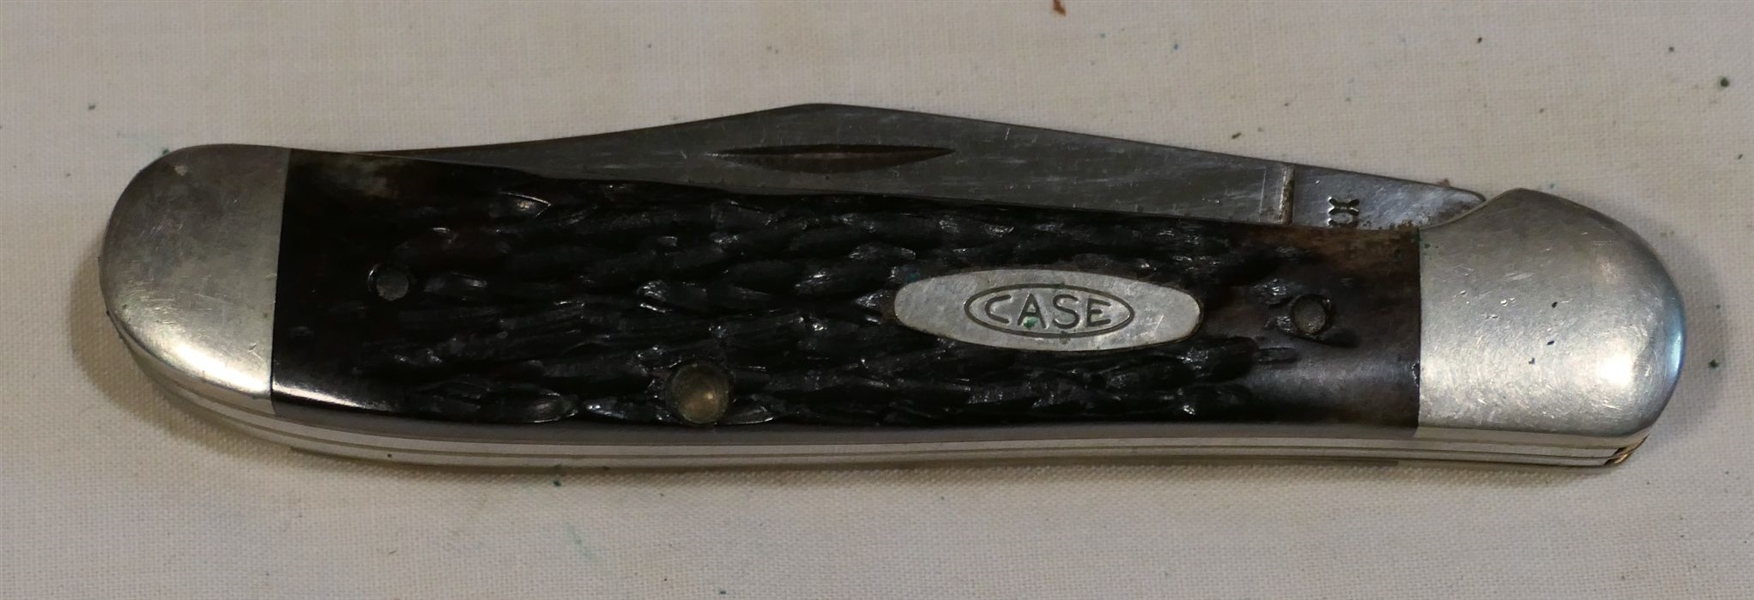 Case XX 2 Blade Pocket Knife - Number 6249 - Measures 4" Long